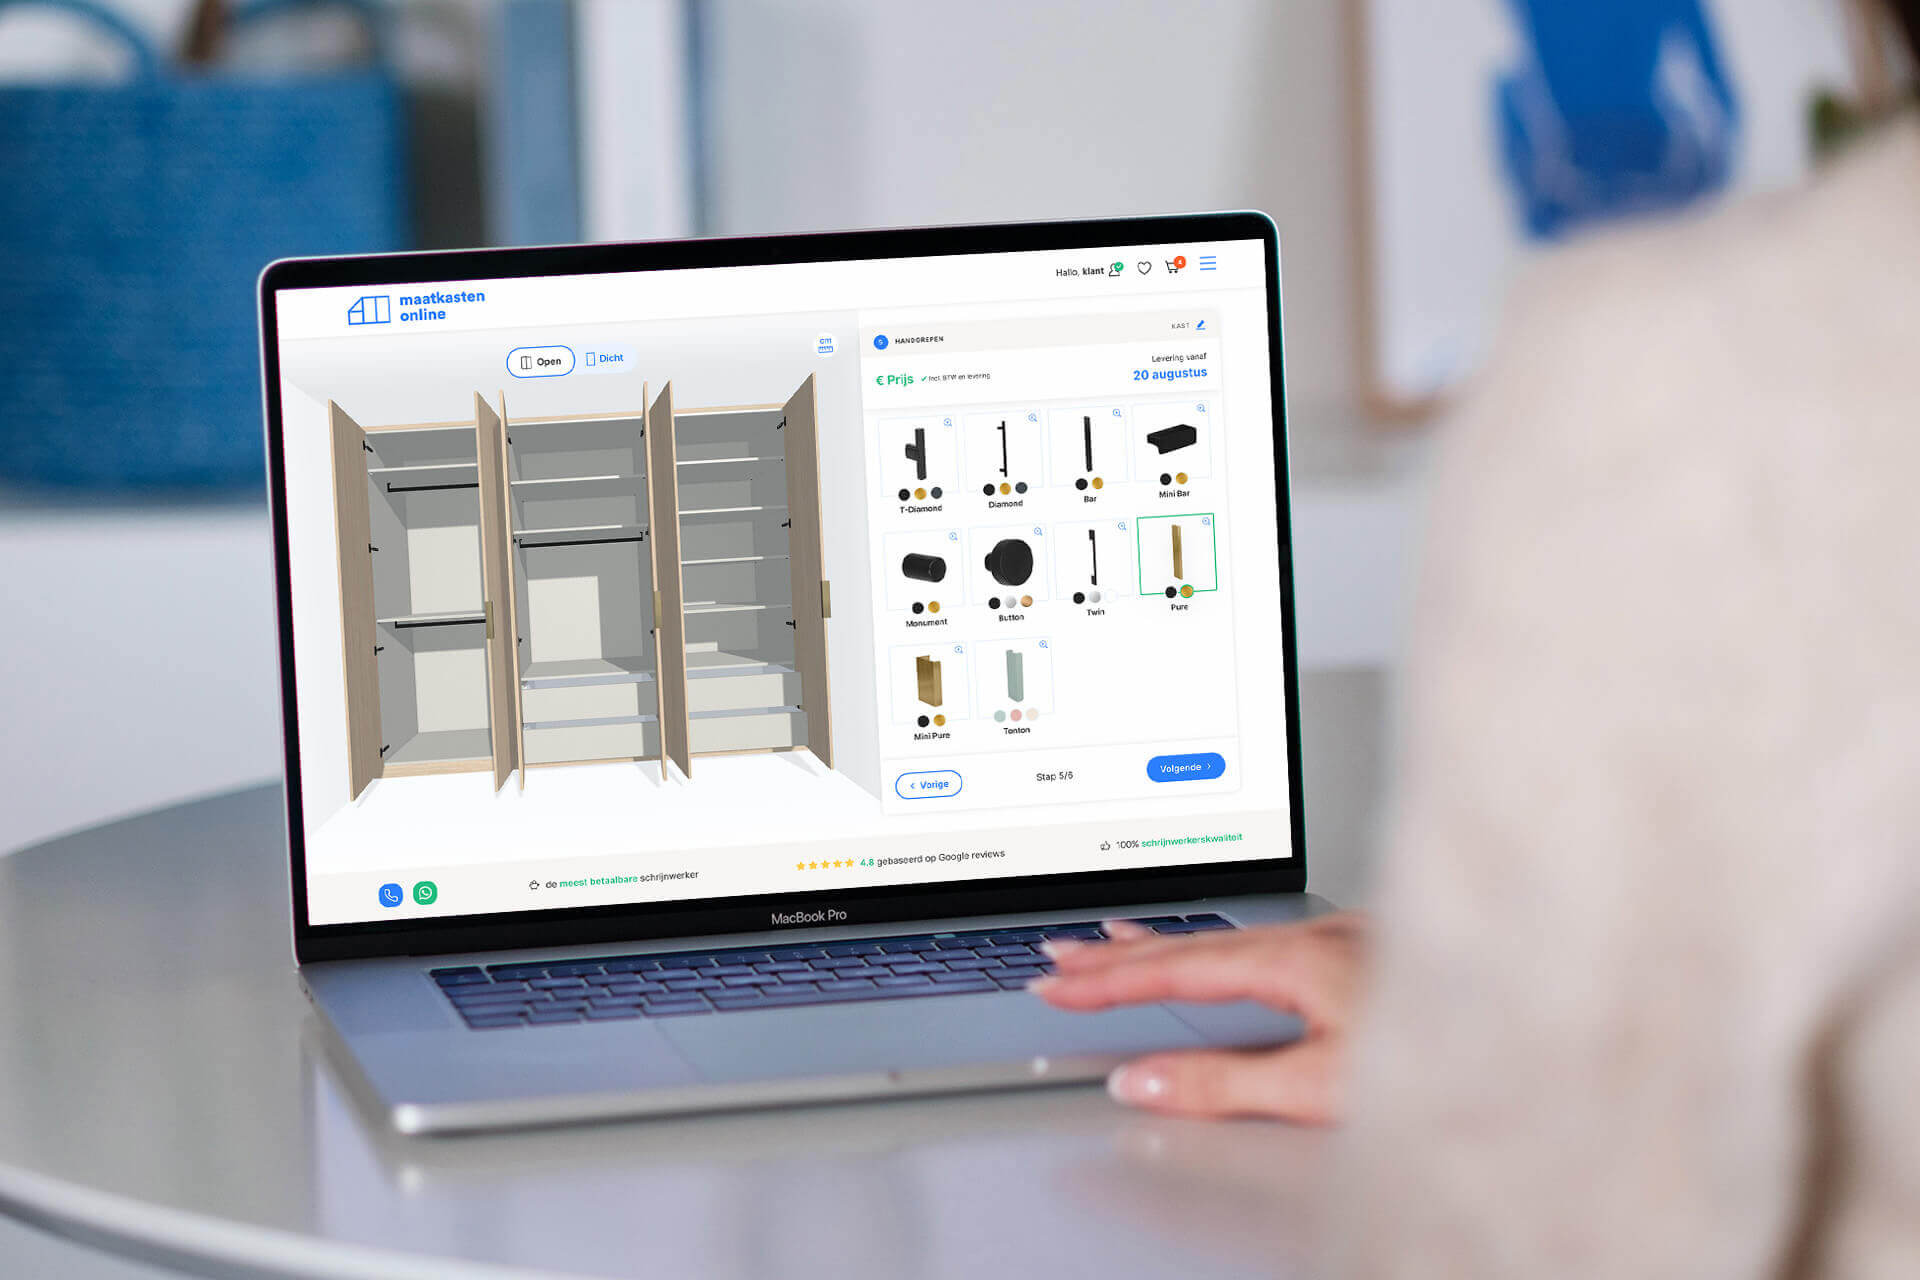 Bespoke closet design in the design tool of Maatkasten Online